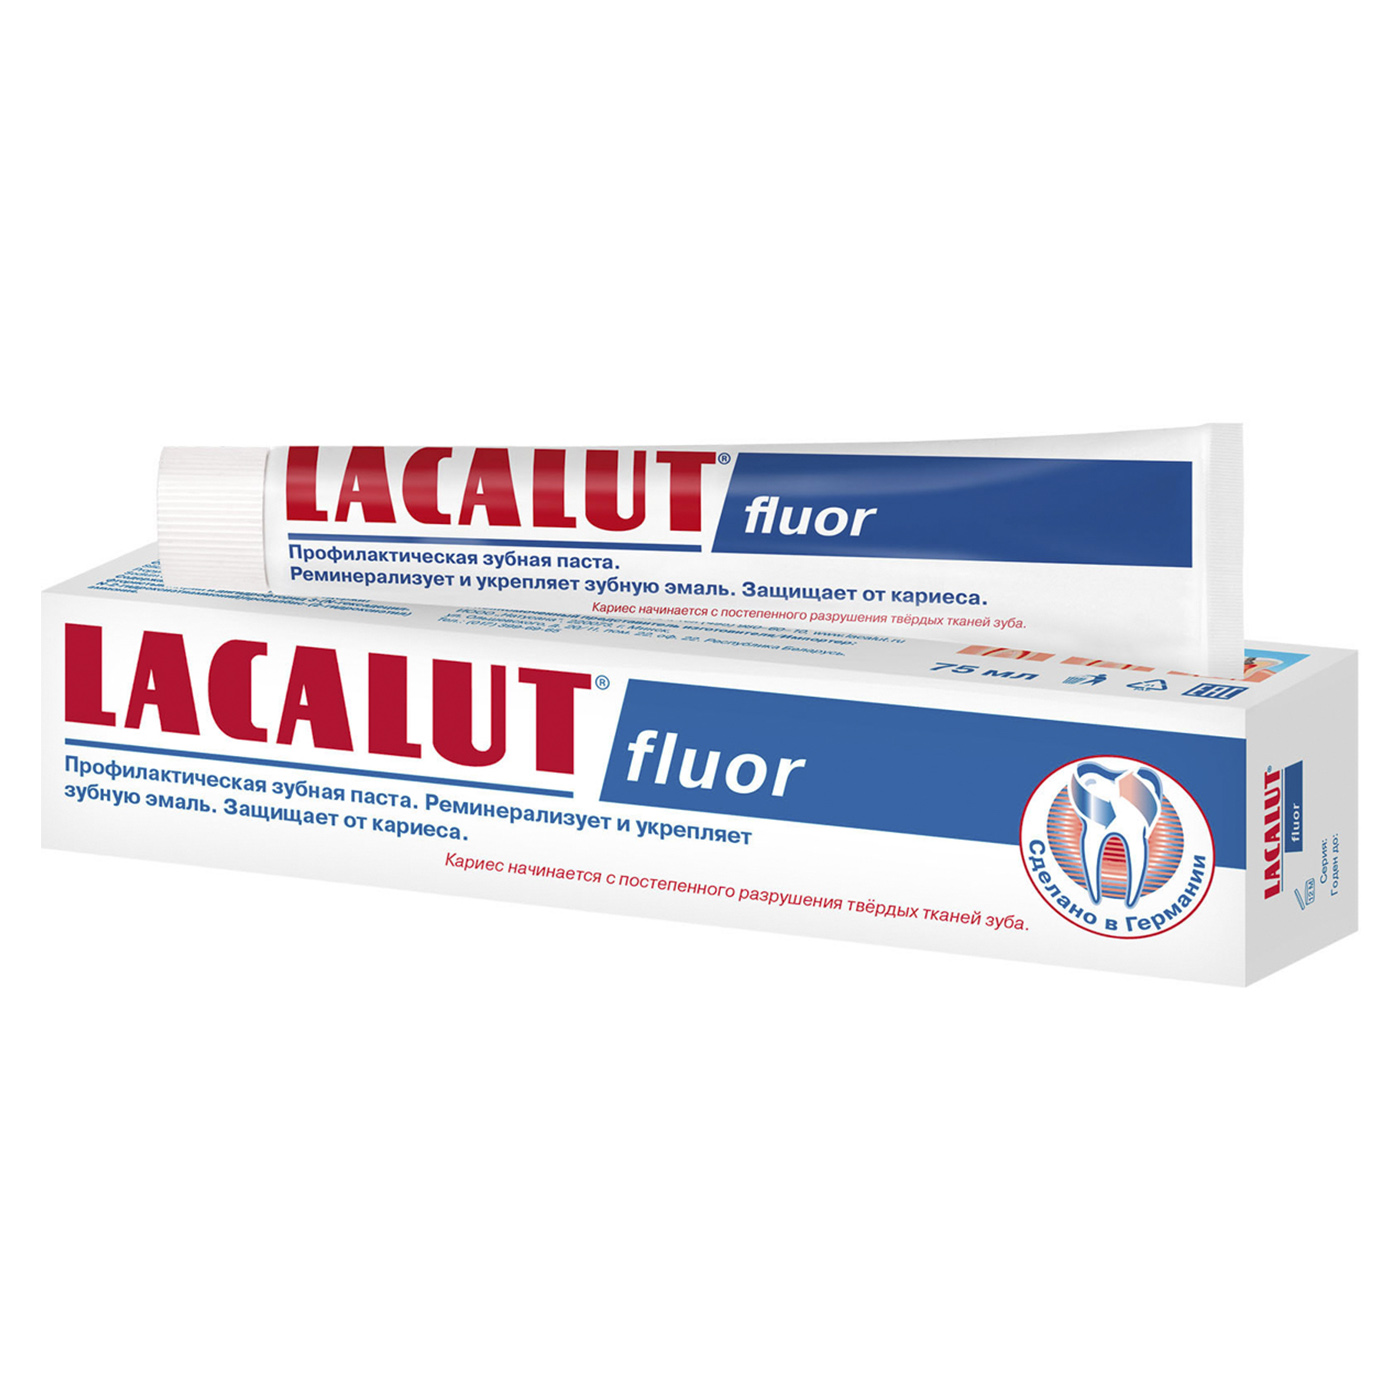 Купить Lacalut Lacalut fluor, профилактическая зубная паста, 75 мл (Lacalut, Зубные пасты), Германия